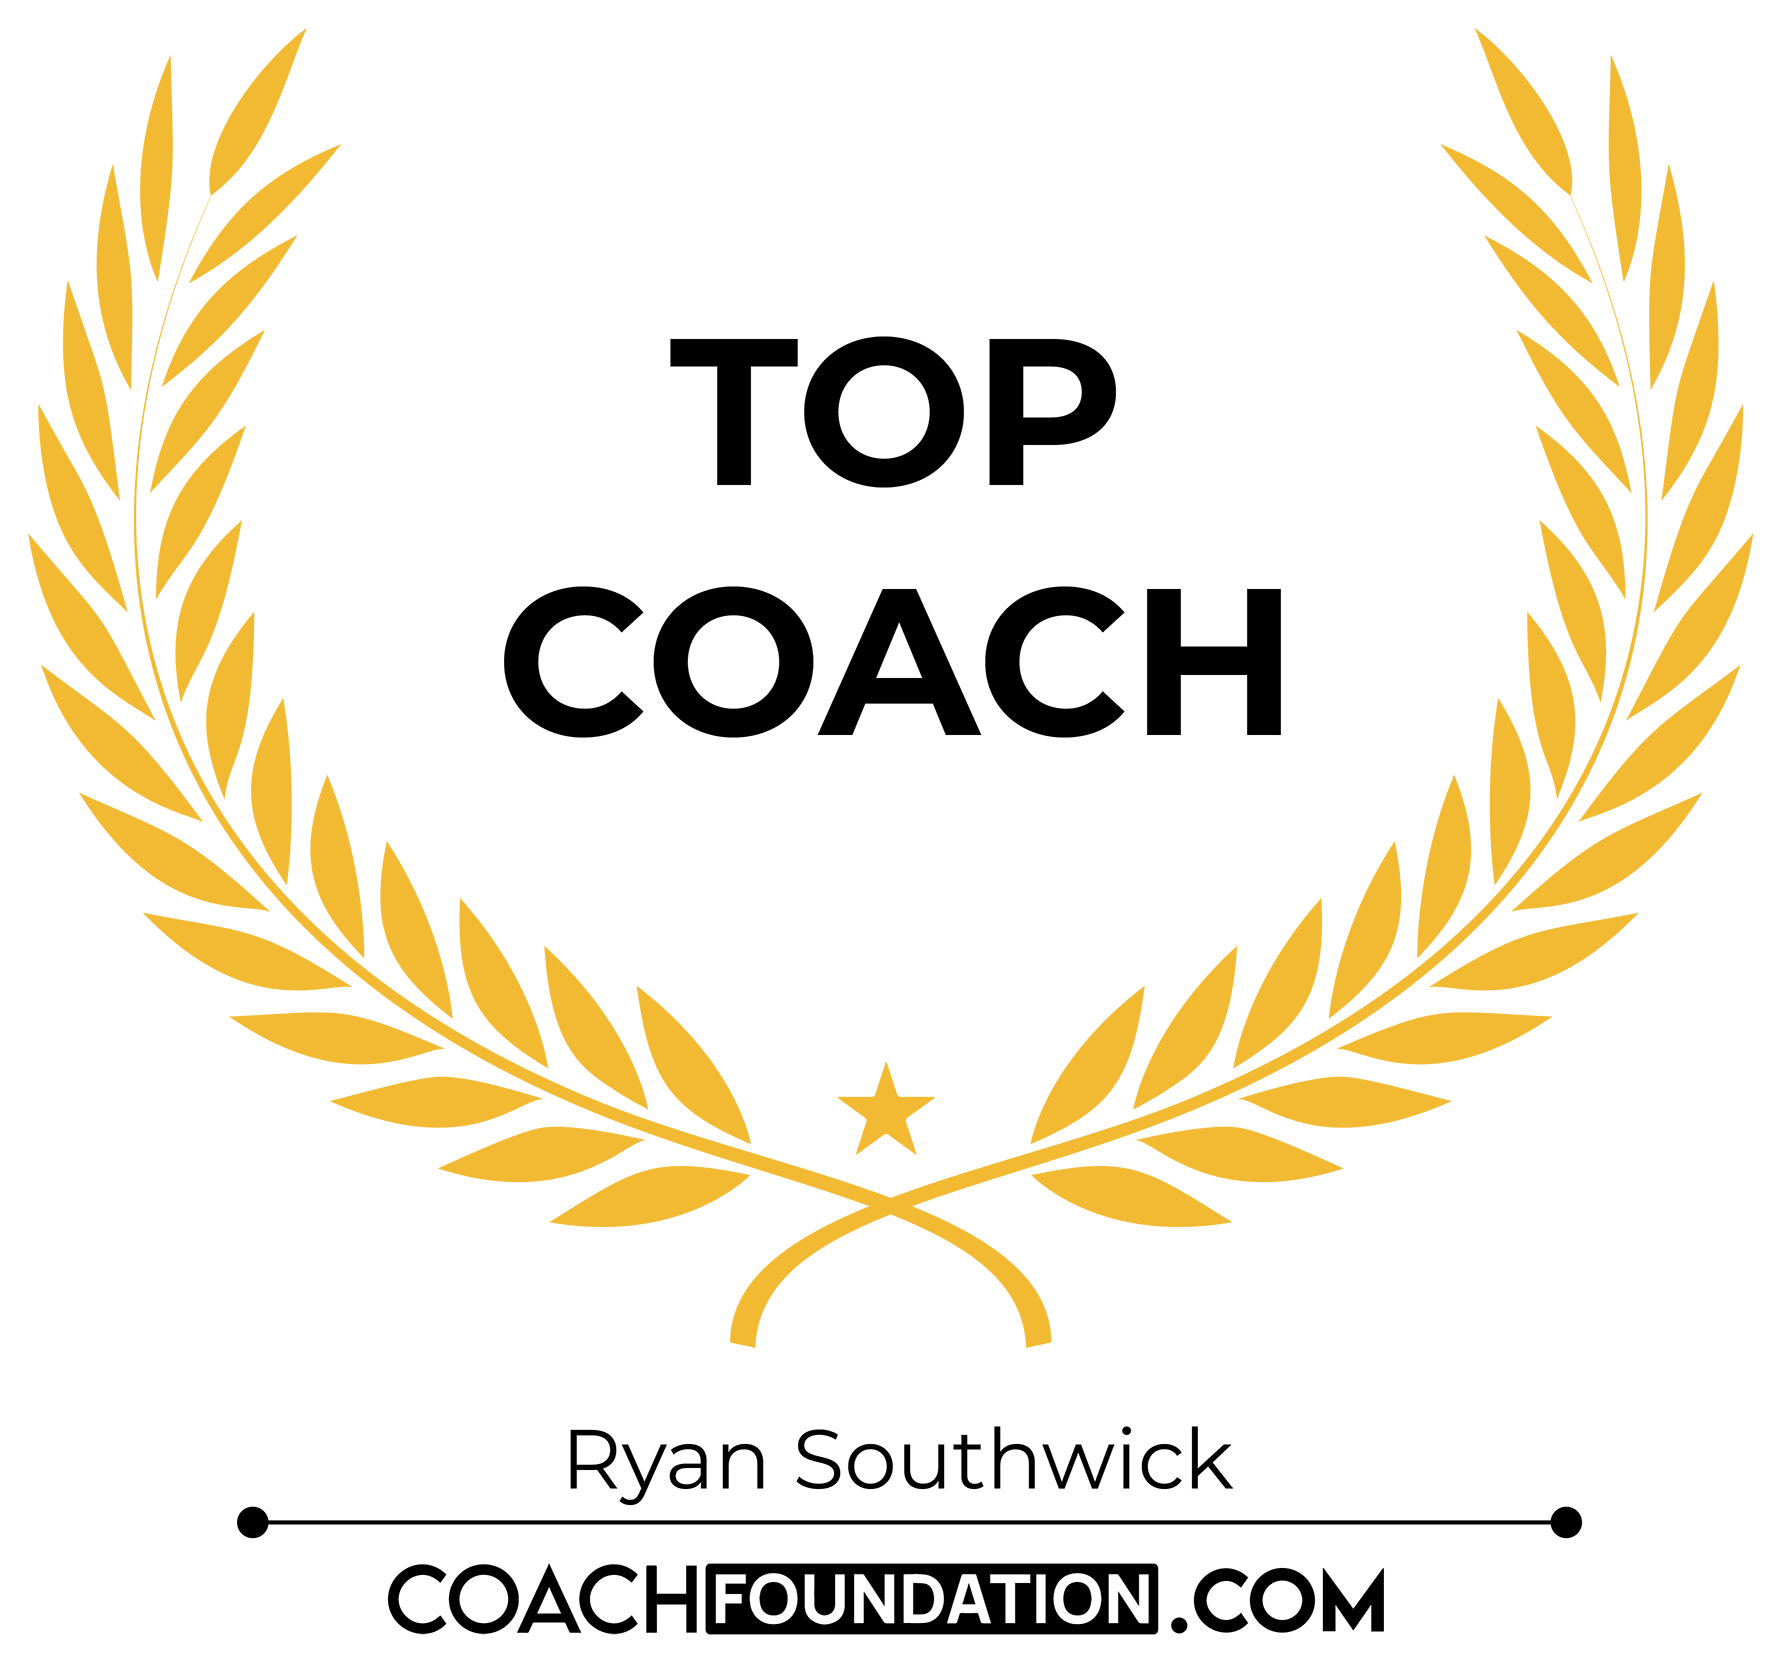 Top Coach - Ryan Southwick, Coaching Foundation